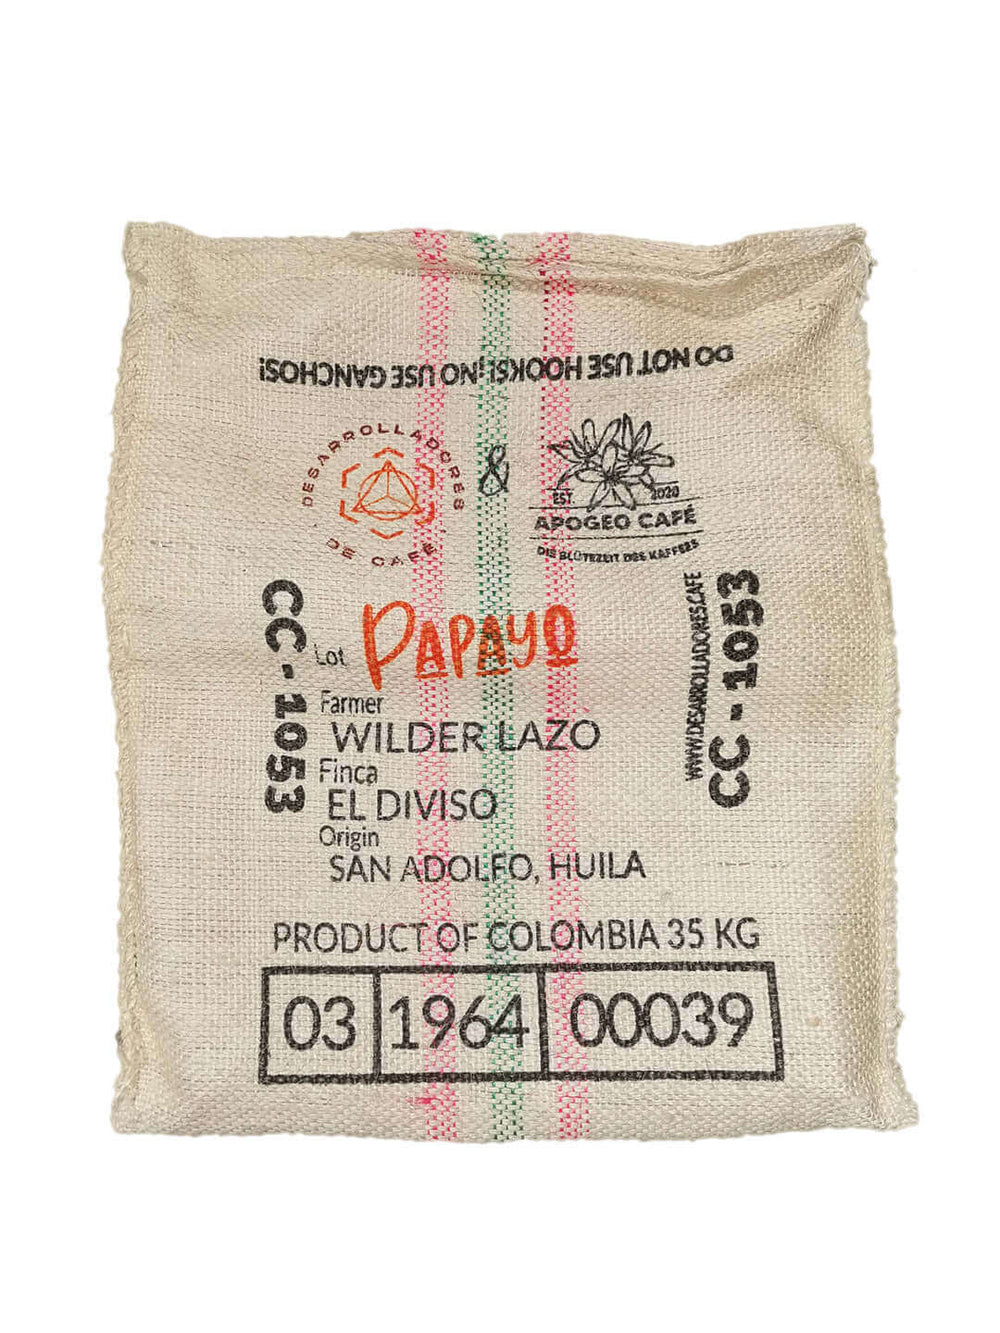 Kaffeesack vom Kaffee aus Kolumbien online kaufen im Onlineshop für kolumbianischen Spezialitätenkaffee